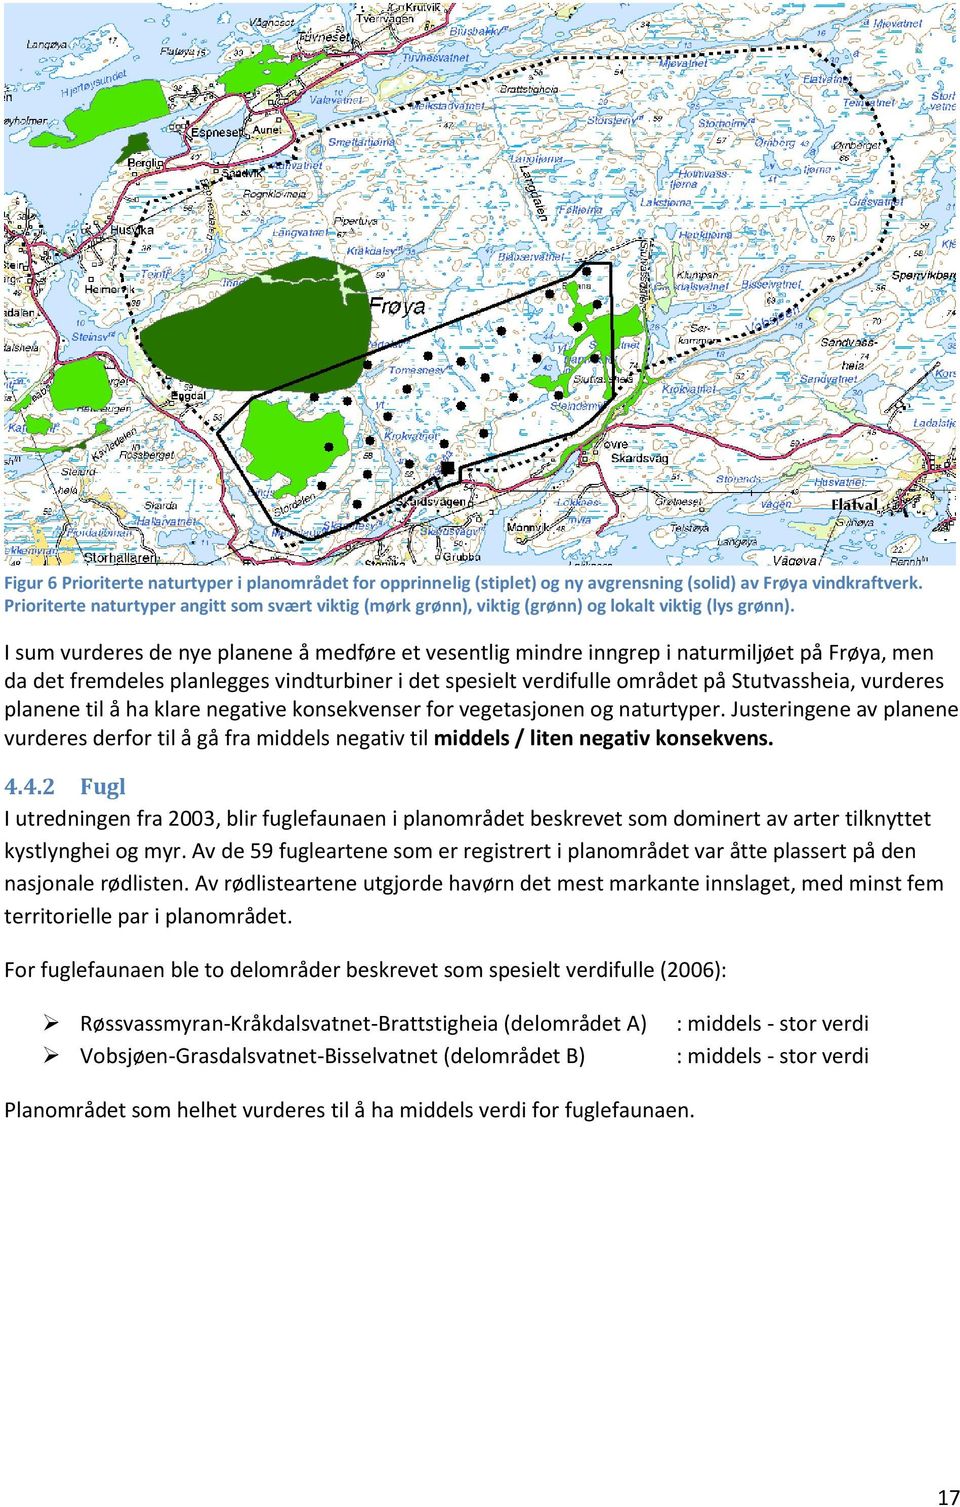 I sum vurderes de nye planene å medføre et vesentlig mindre inngrep i naturmiljøet på Frøya, men da det fremdeles planlegges vindturbiner i det spesielt verdifulle området på Stutvassheia, vurderes